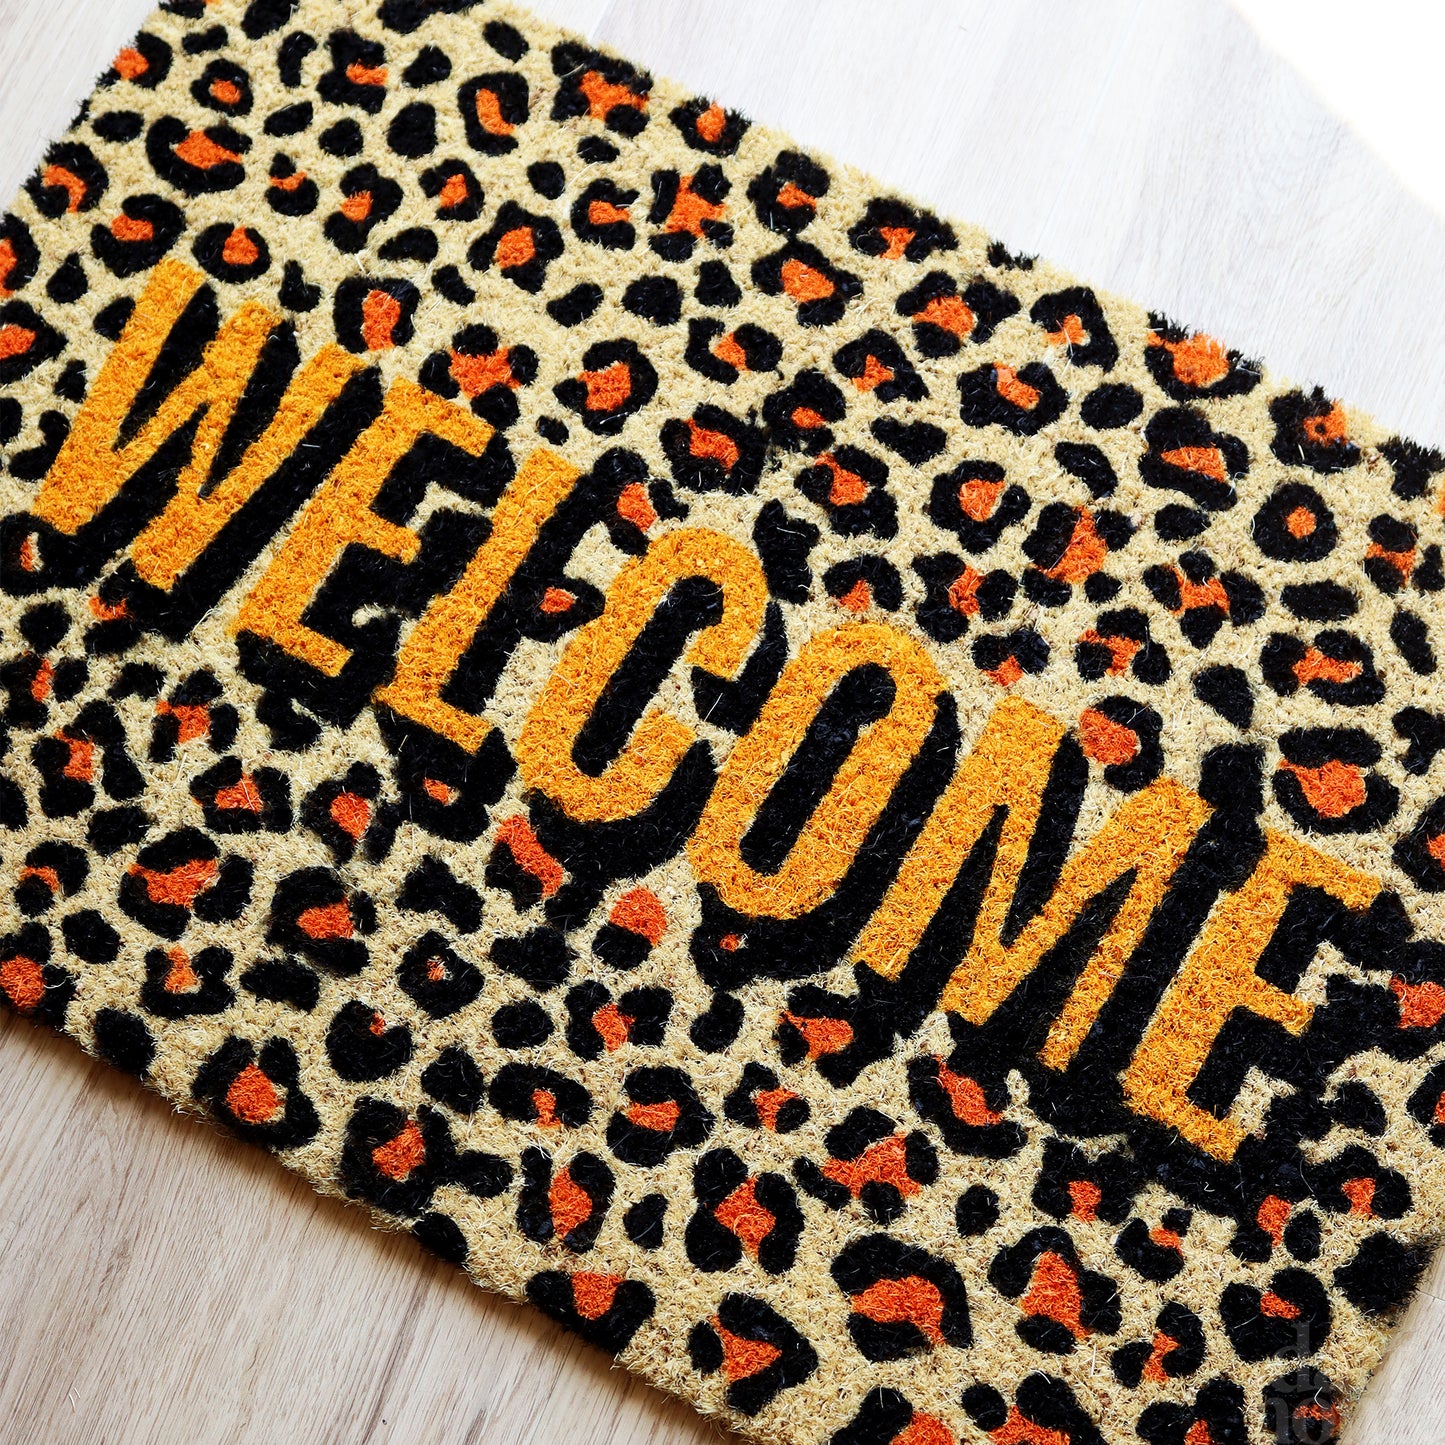 Light Leopard Print Welcome Doormat